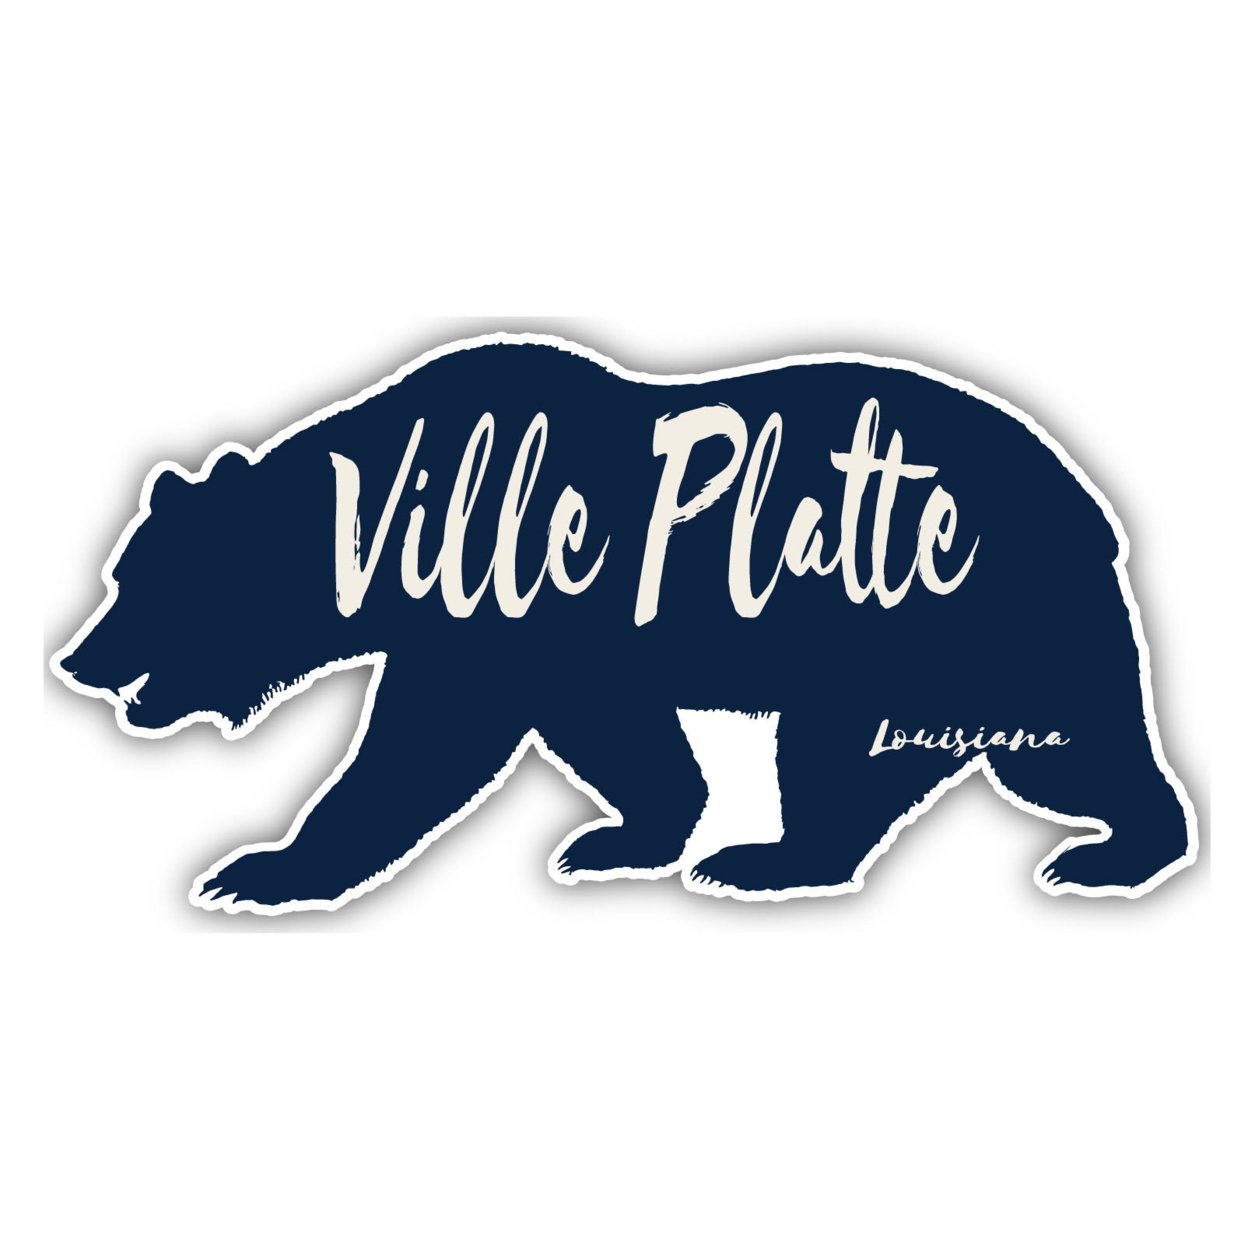 Ville Platte Louisiana Souvenir Decorative Stickers (Choose Theme And Size) - Single Unit, 4-Inch, Bear